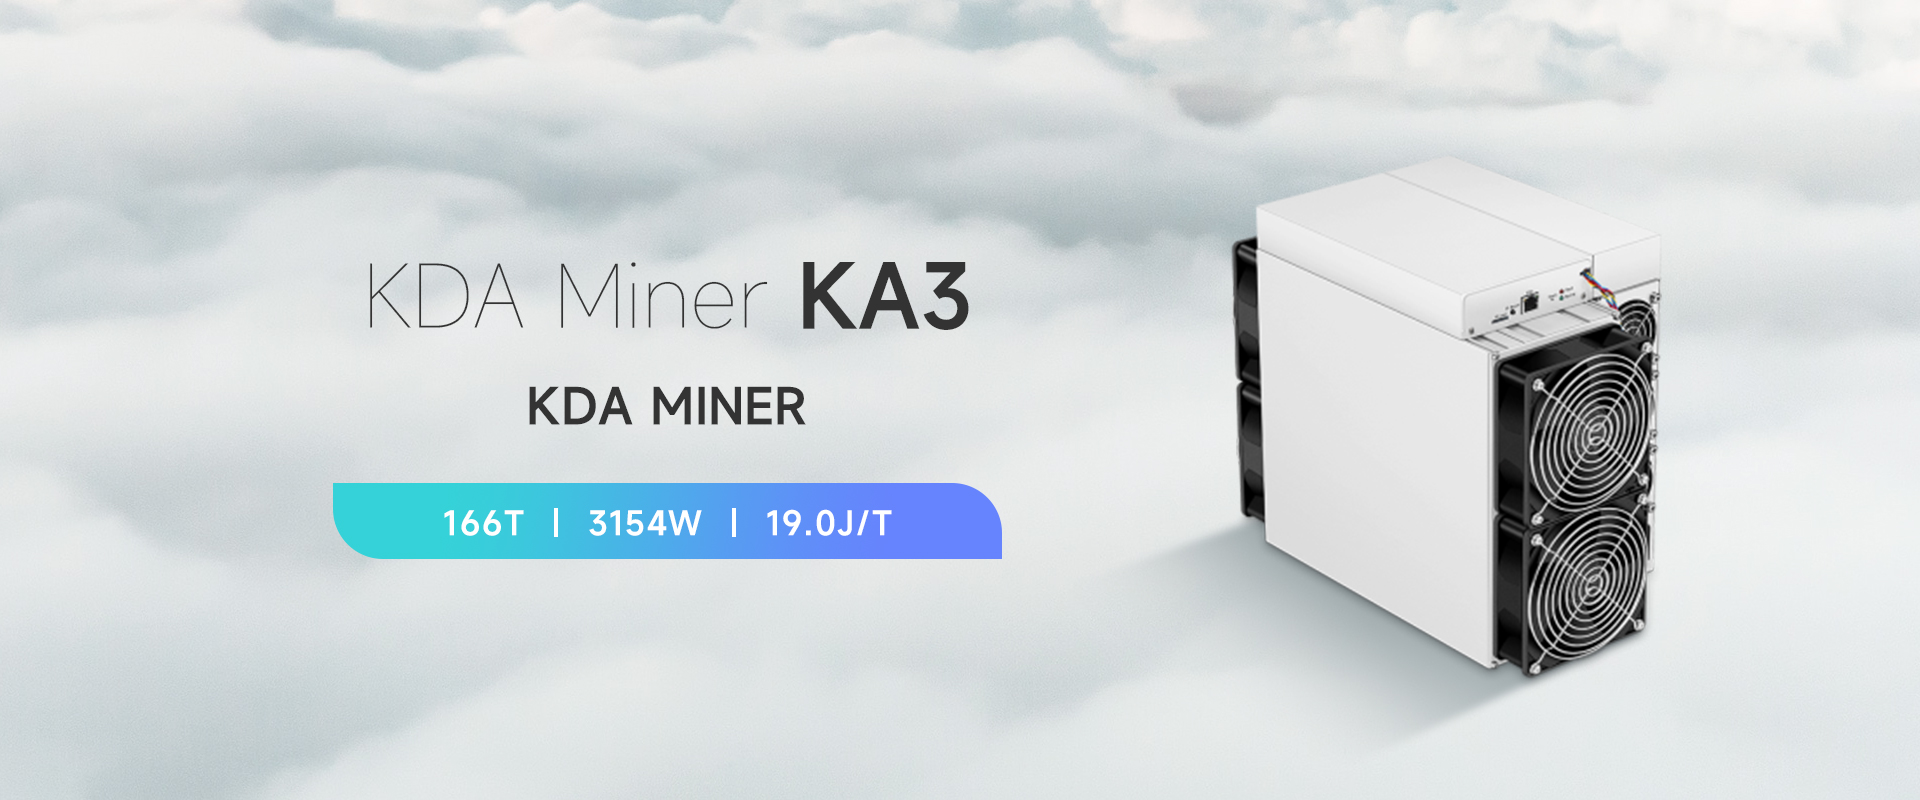 KDA-Miner-KA3-01